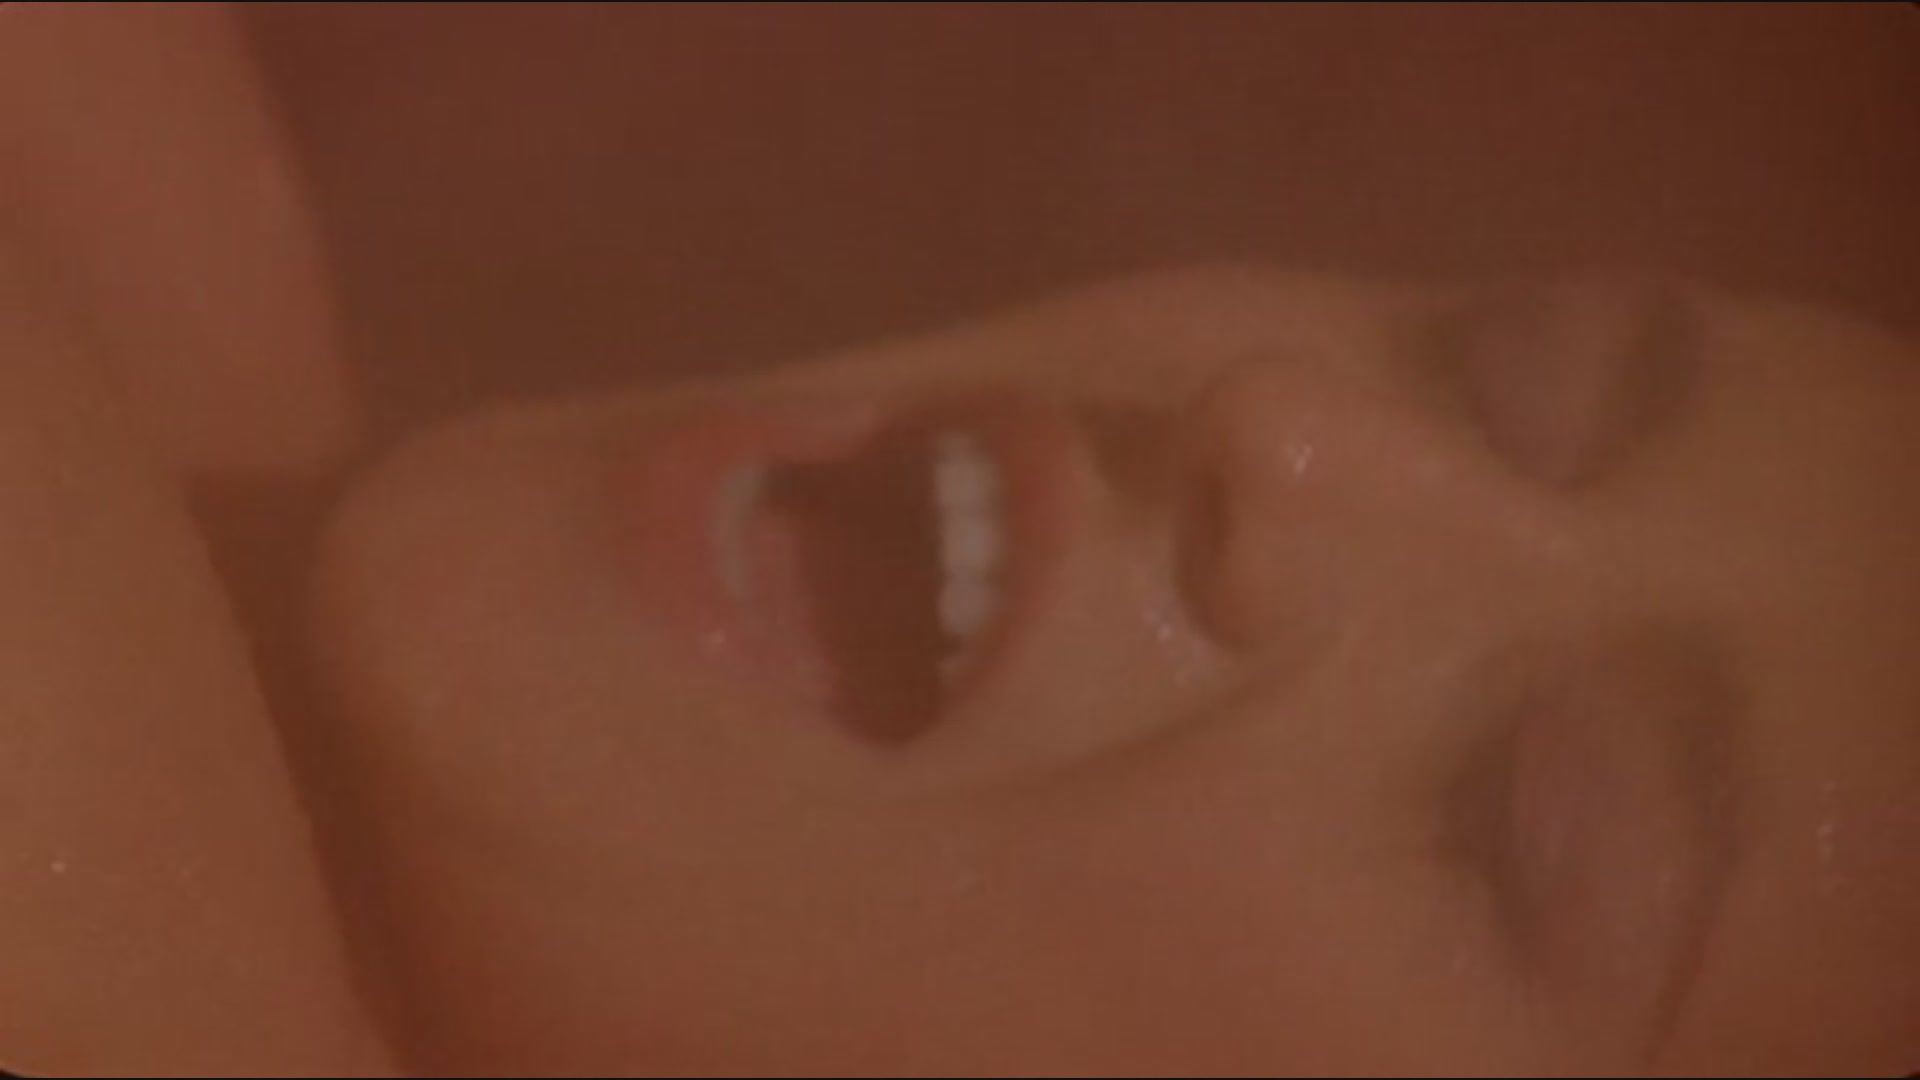 Kaotic Silvia Rossi sex scene in sauna from the movie "Fallo" Amature Porn - 1